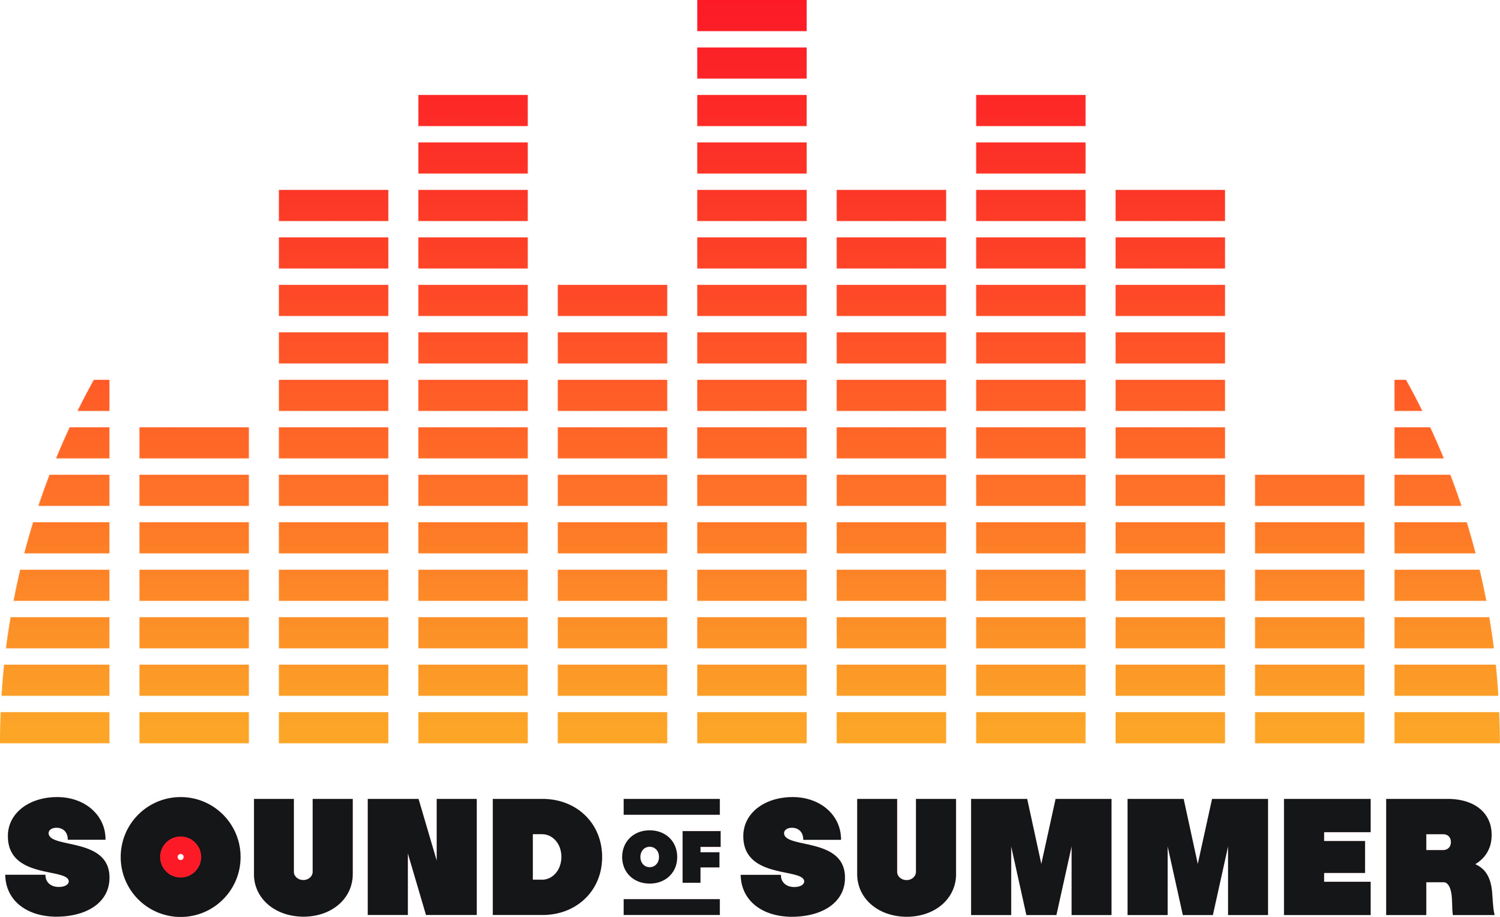 2017 Sound of Summer logo